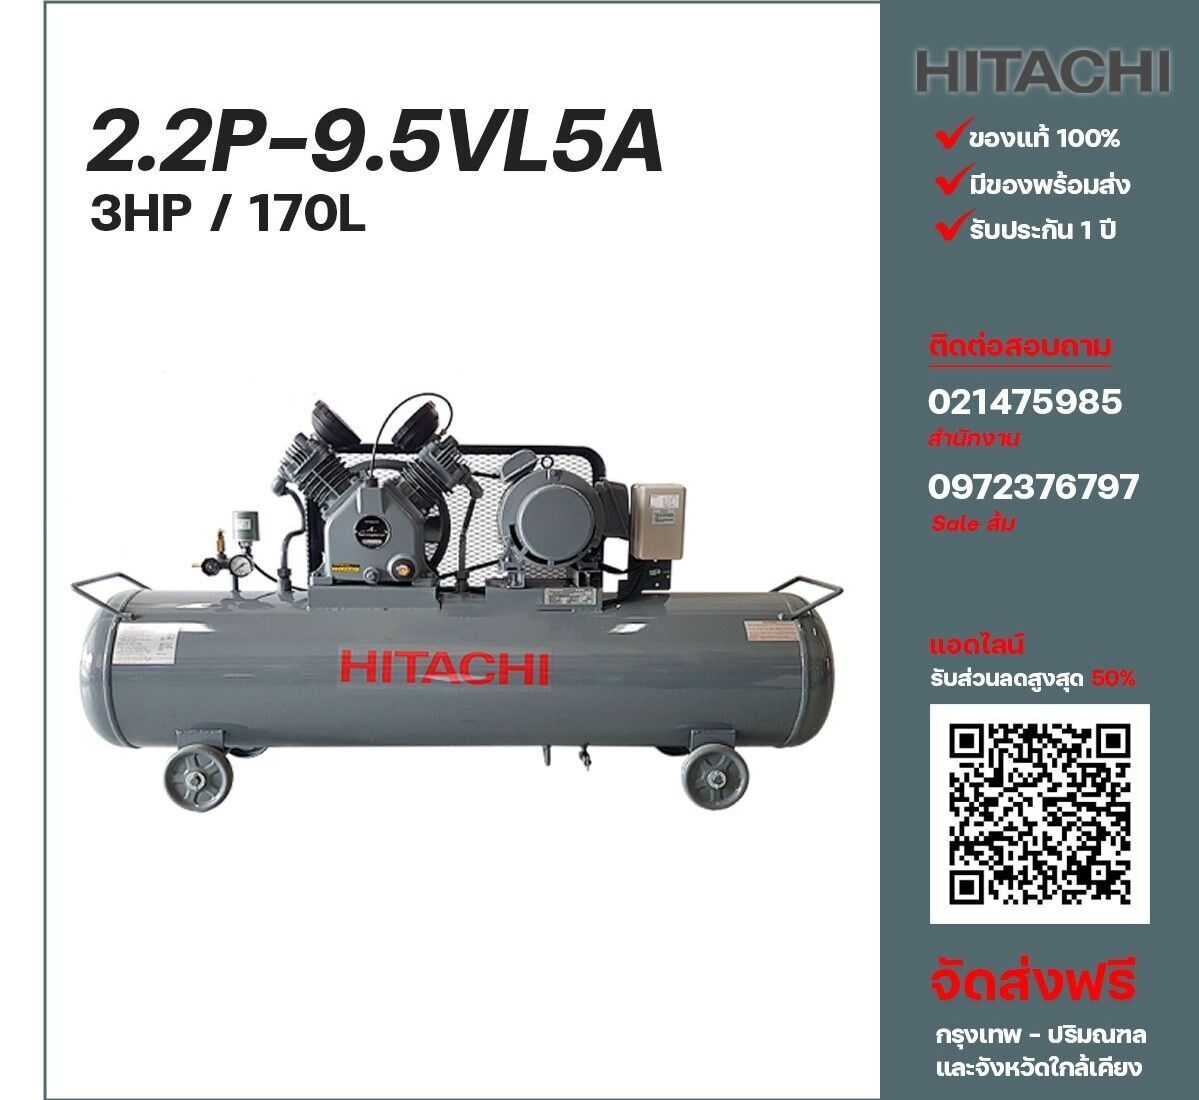 ปั๊มลมฮิตาชิ HITACHI รุ่นใช้น้ำมัน 2.2P-9.5VL5A380V ปั๊มลมลูกสูบ ขนาด 2 สูบ 3 แรงม้า 170 ลิตร Hitachi พร้อมมอเตอร์ Hitachi ไฟ 380V ส่งฟรี กรุงเทพฯ-ปริมณฑล รับประกัน 1 ปี